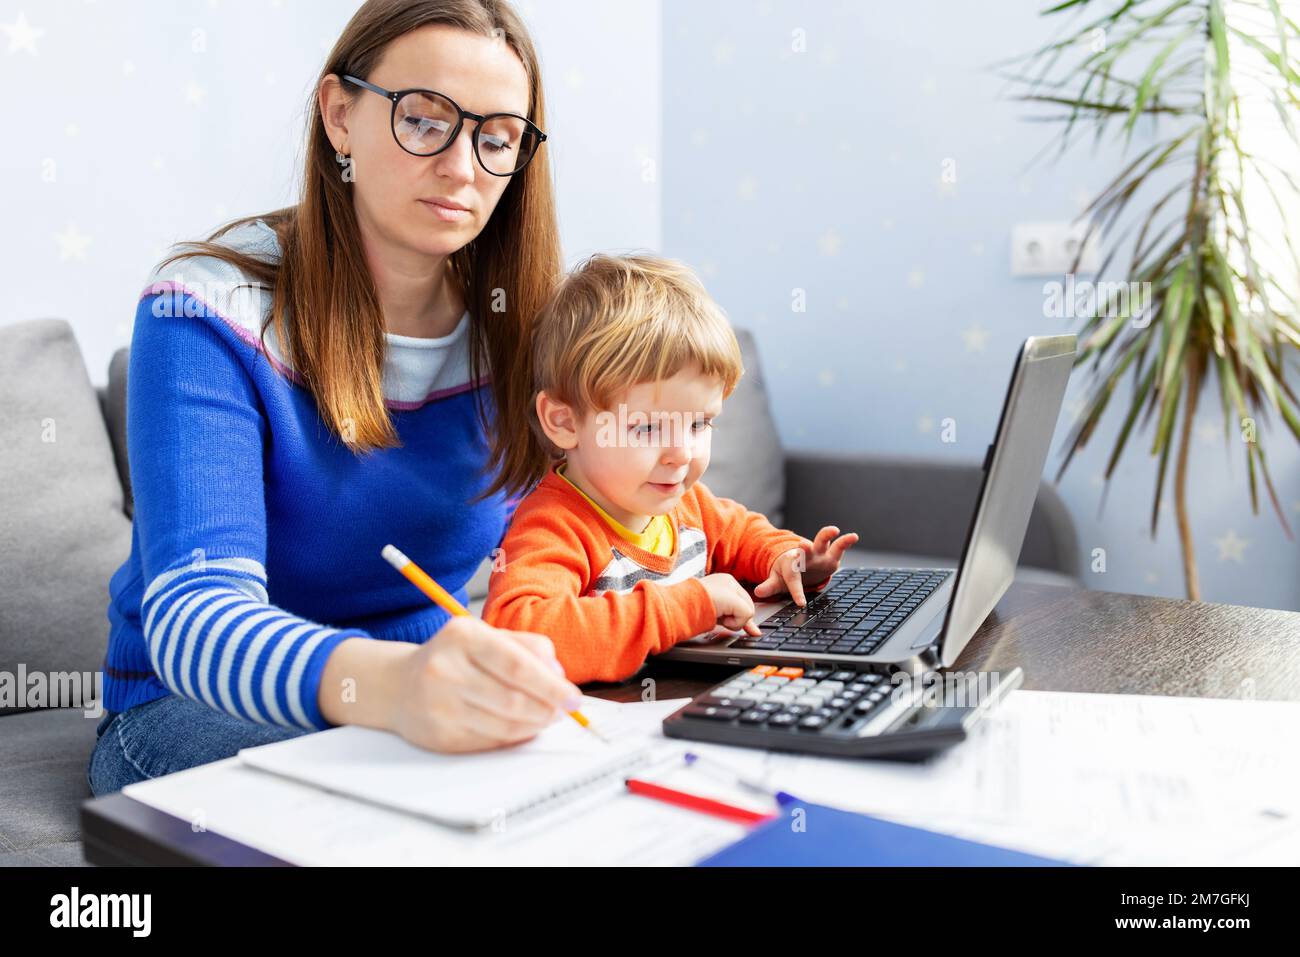 Junge Frau, die zu Hause mit einem Laptop arbeitet und ein Kind auf dem Schoß hat Stockfoto